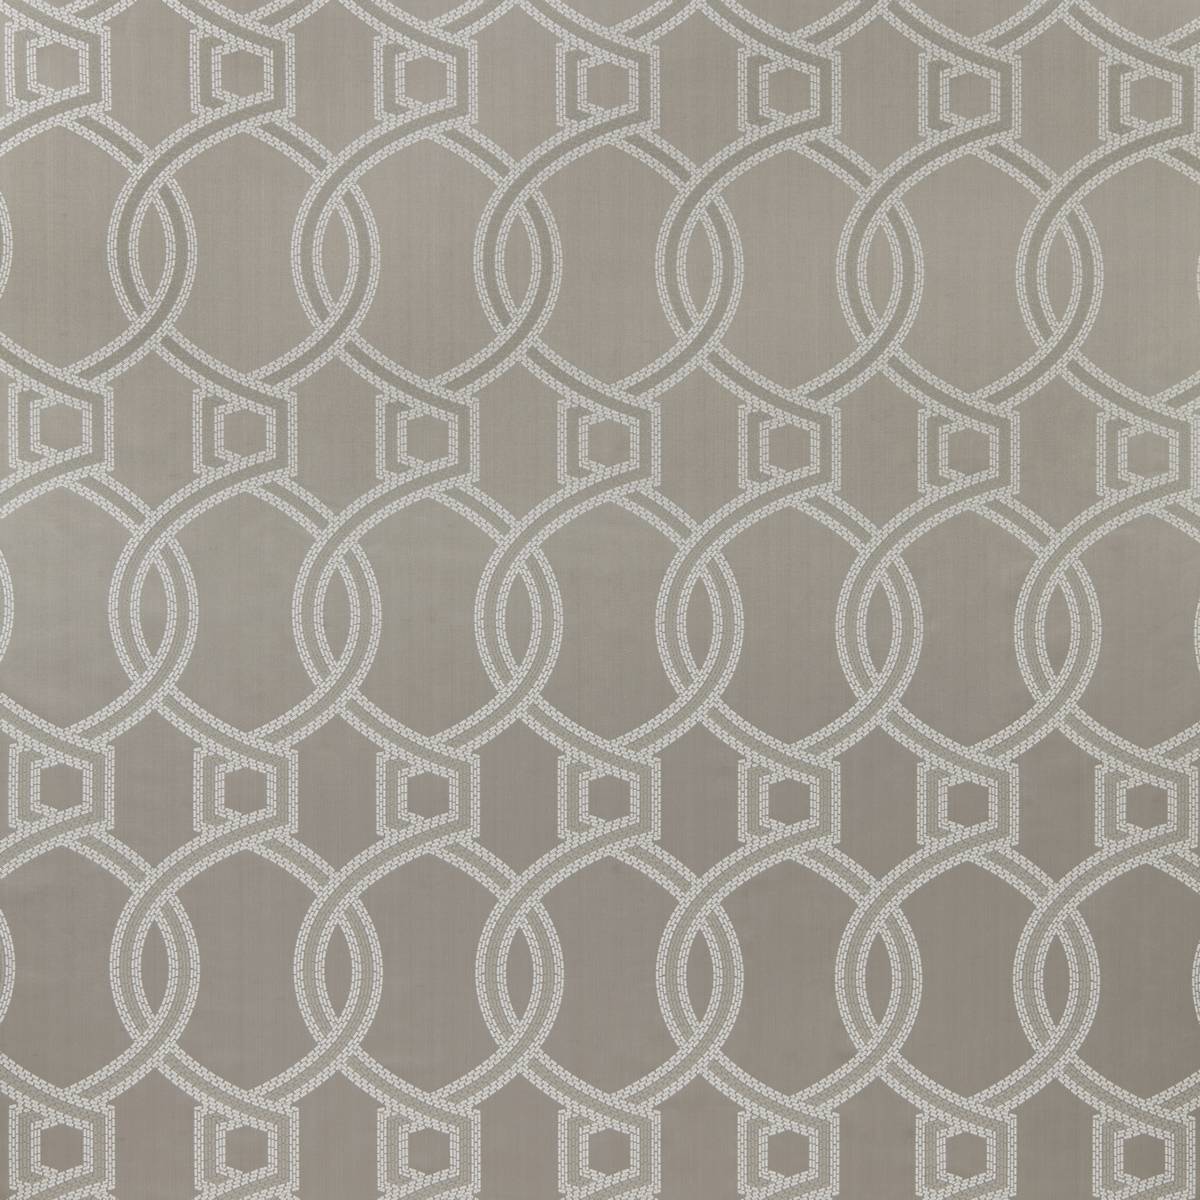 Colonnade Ash Grey Fabric by iLiv